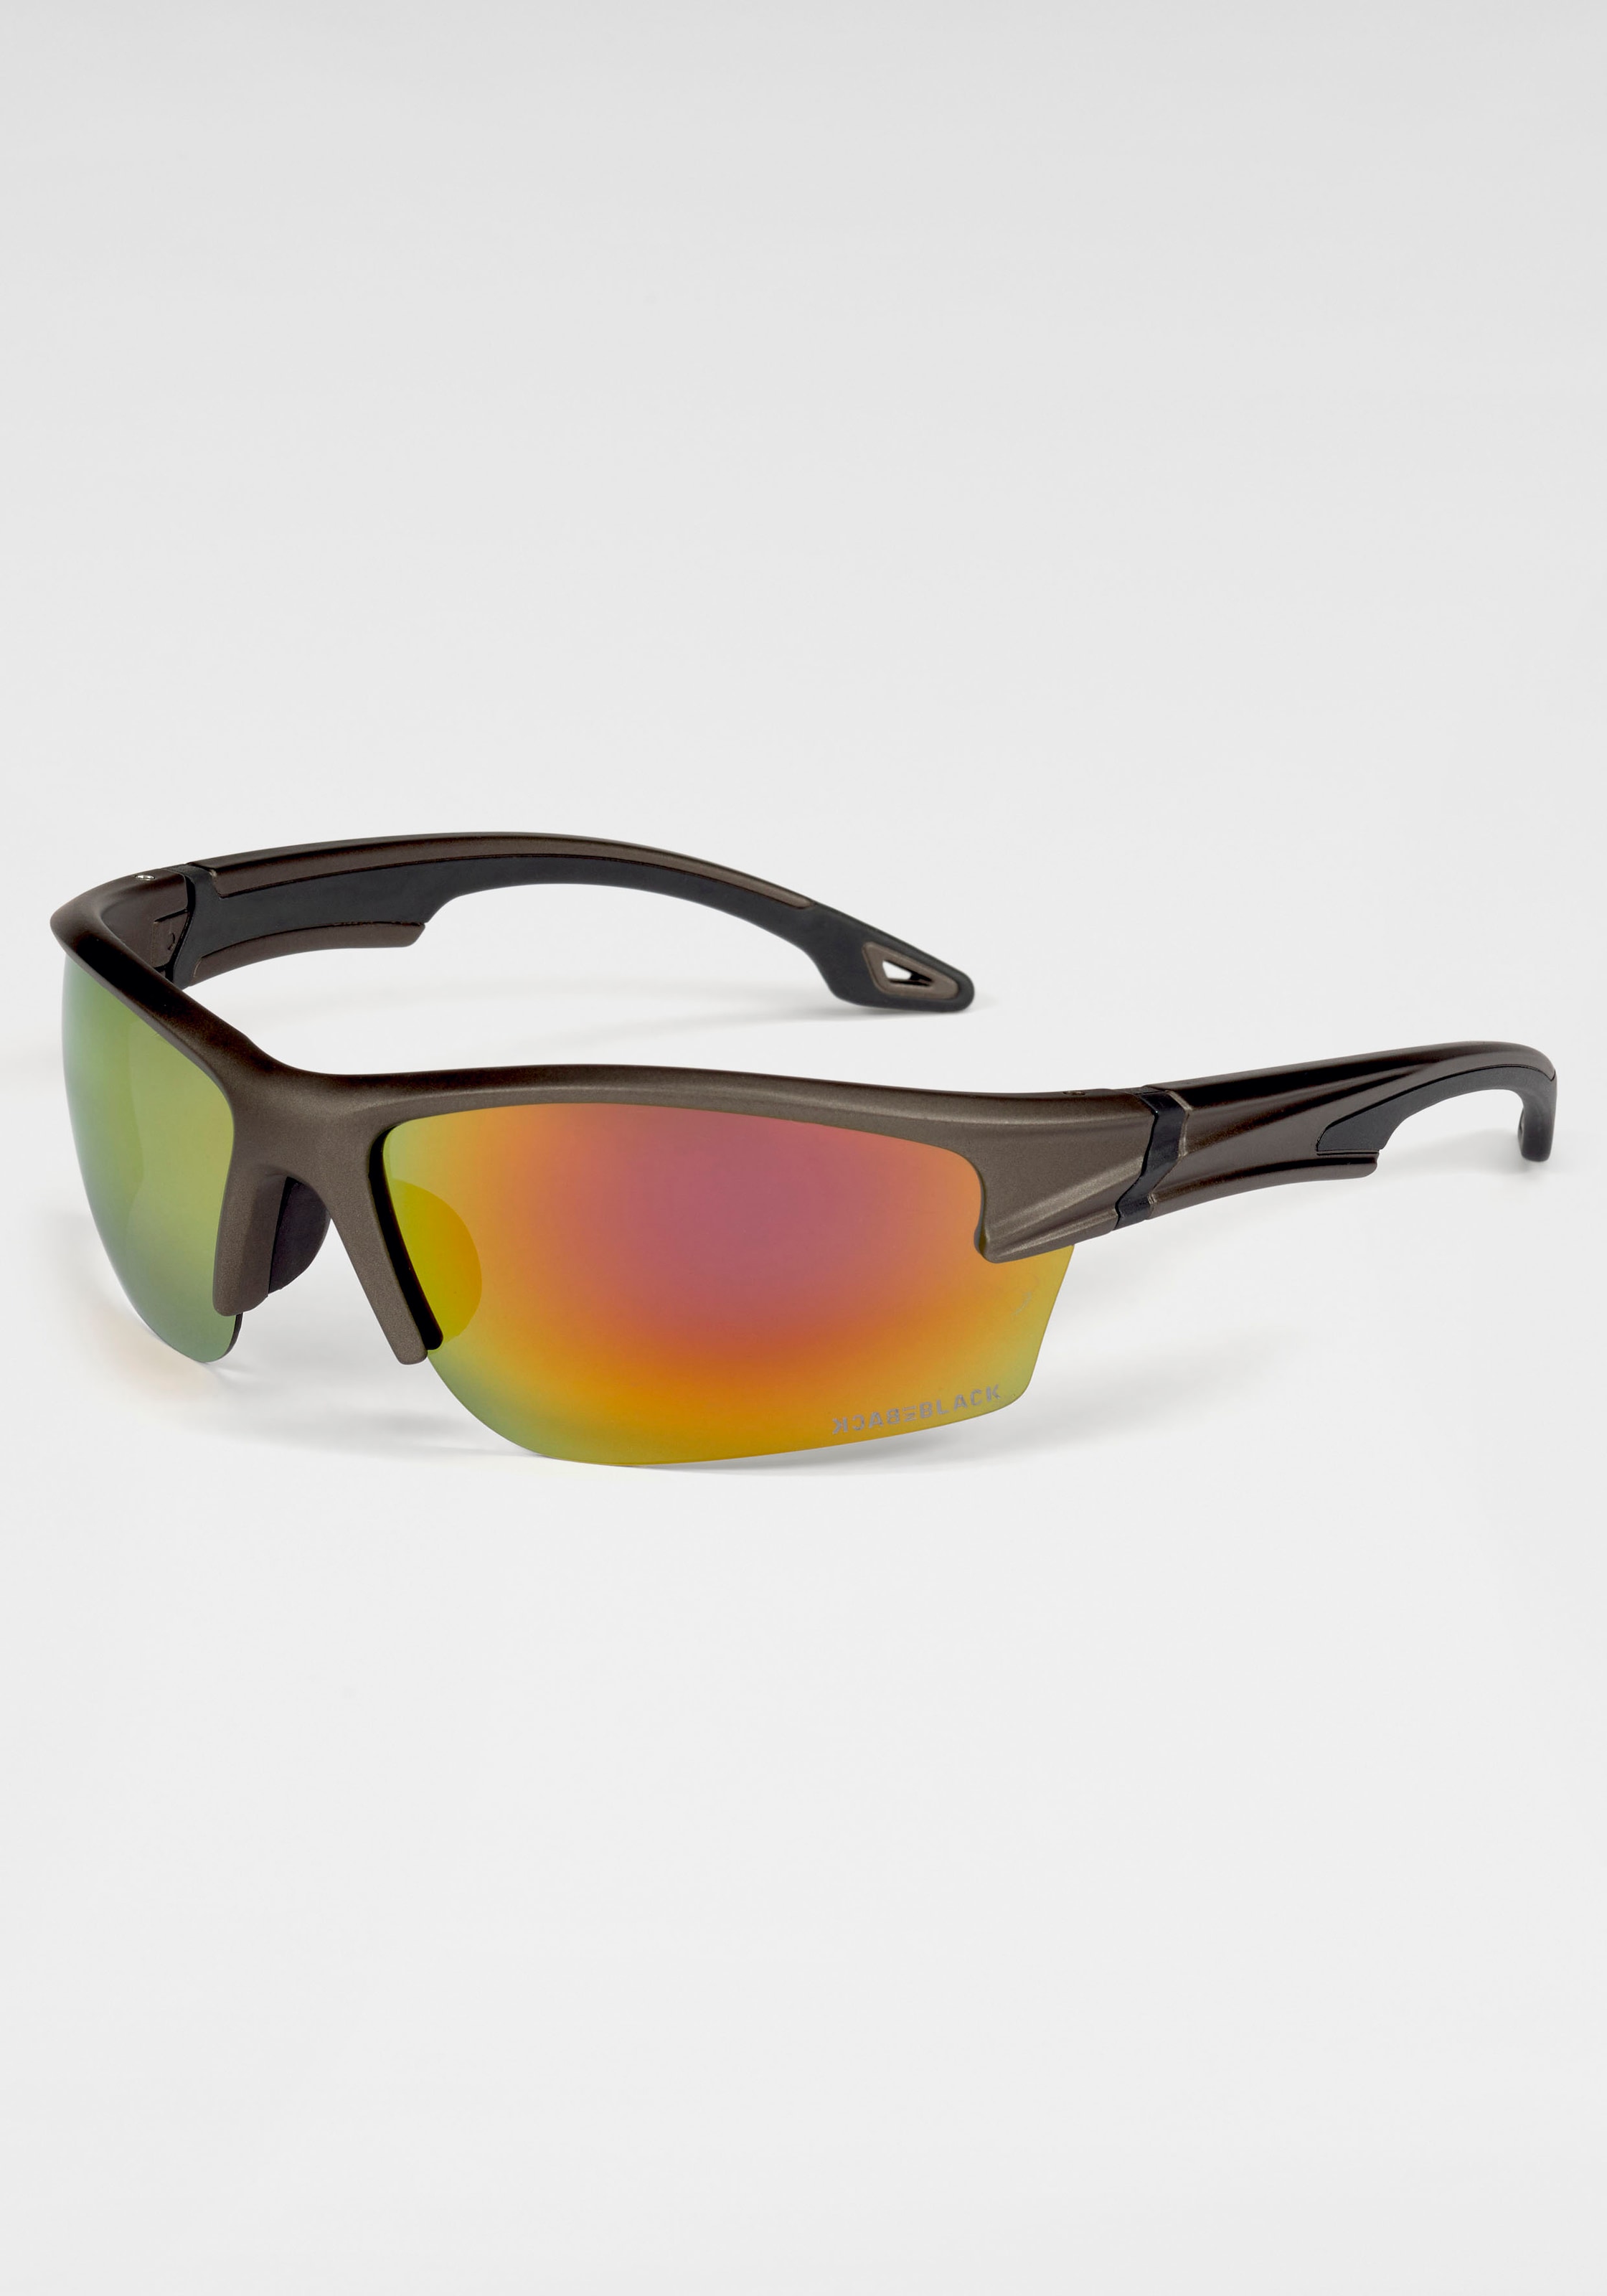 BACK IN BLACK Eyewear Sonnenbrille, Gläser mit Polarisationsfilter